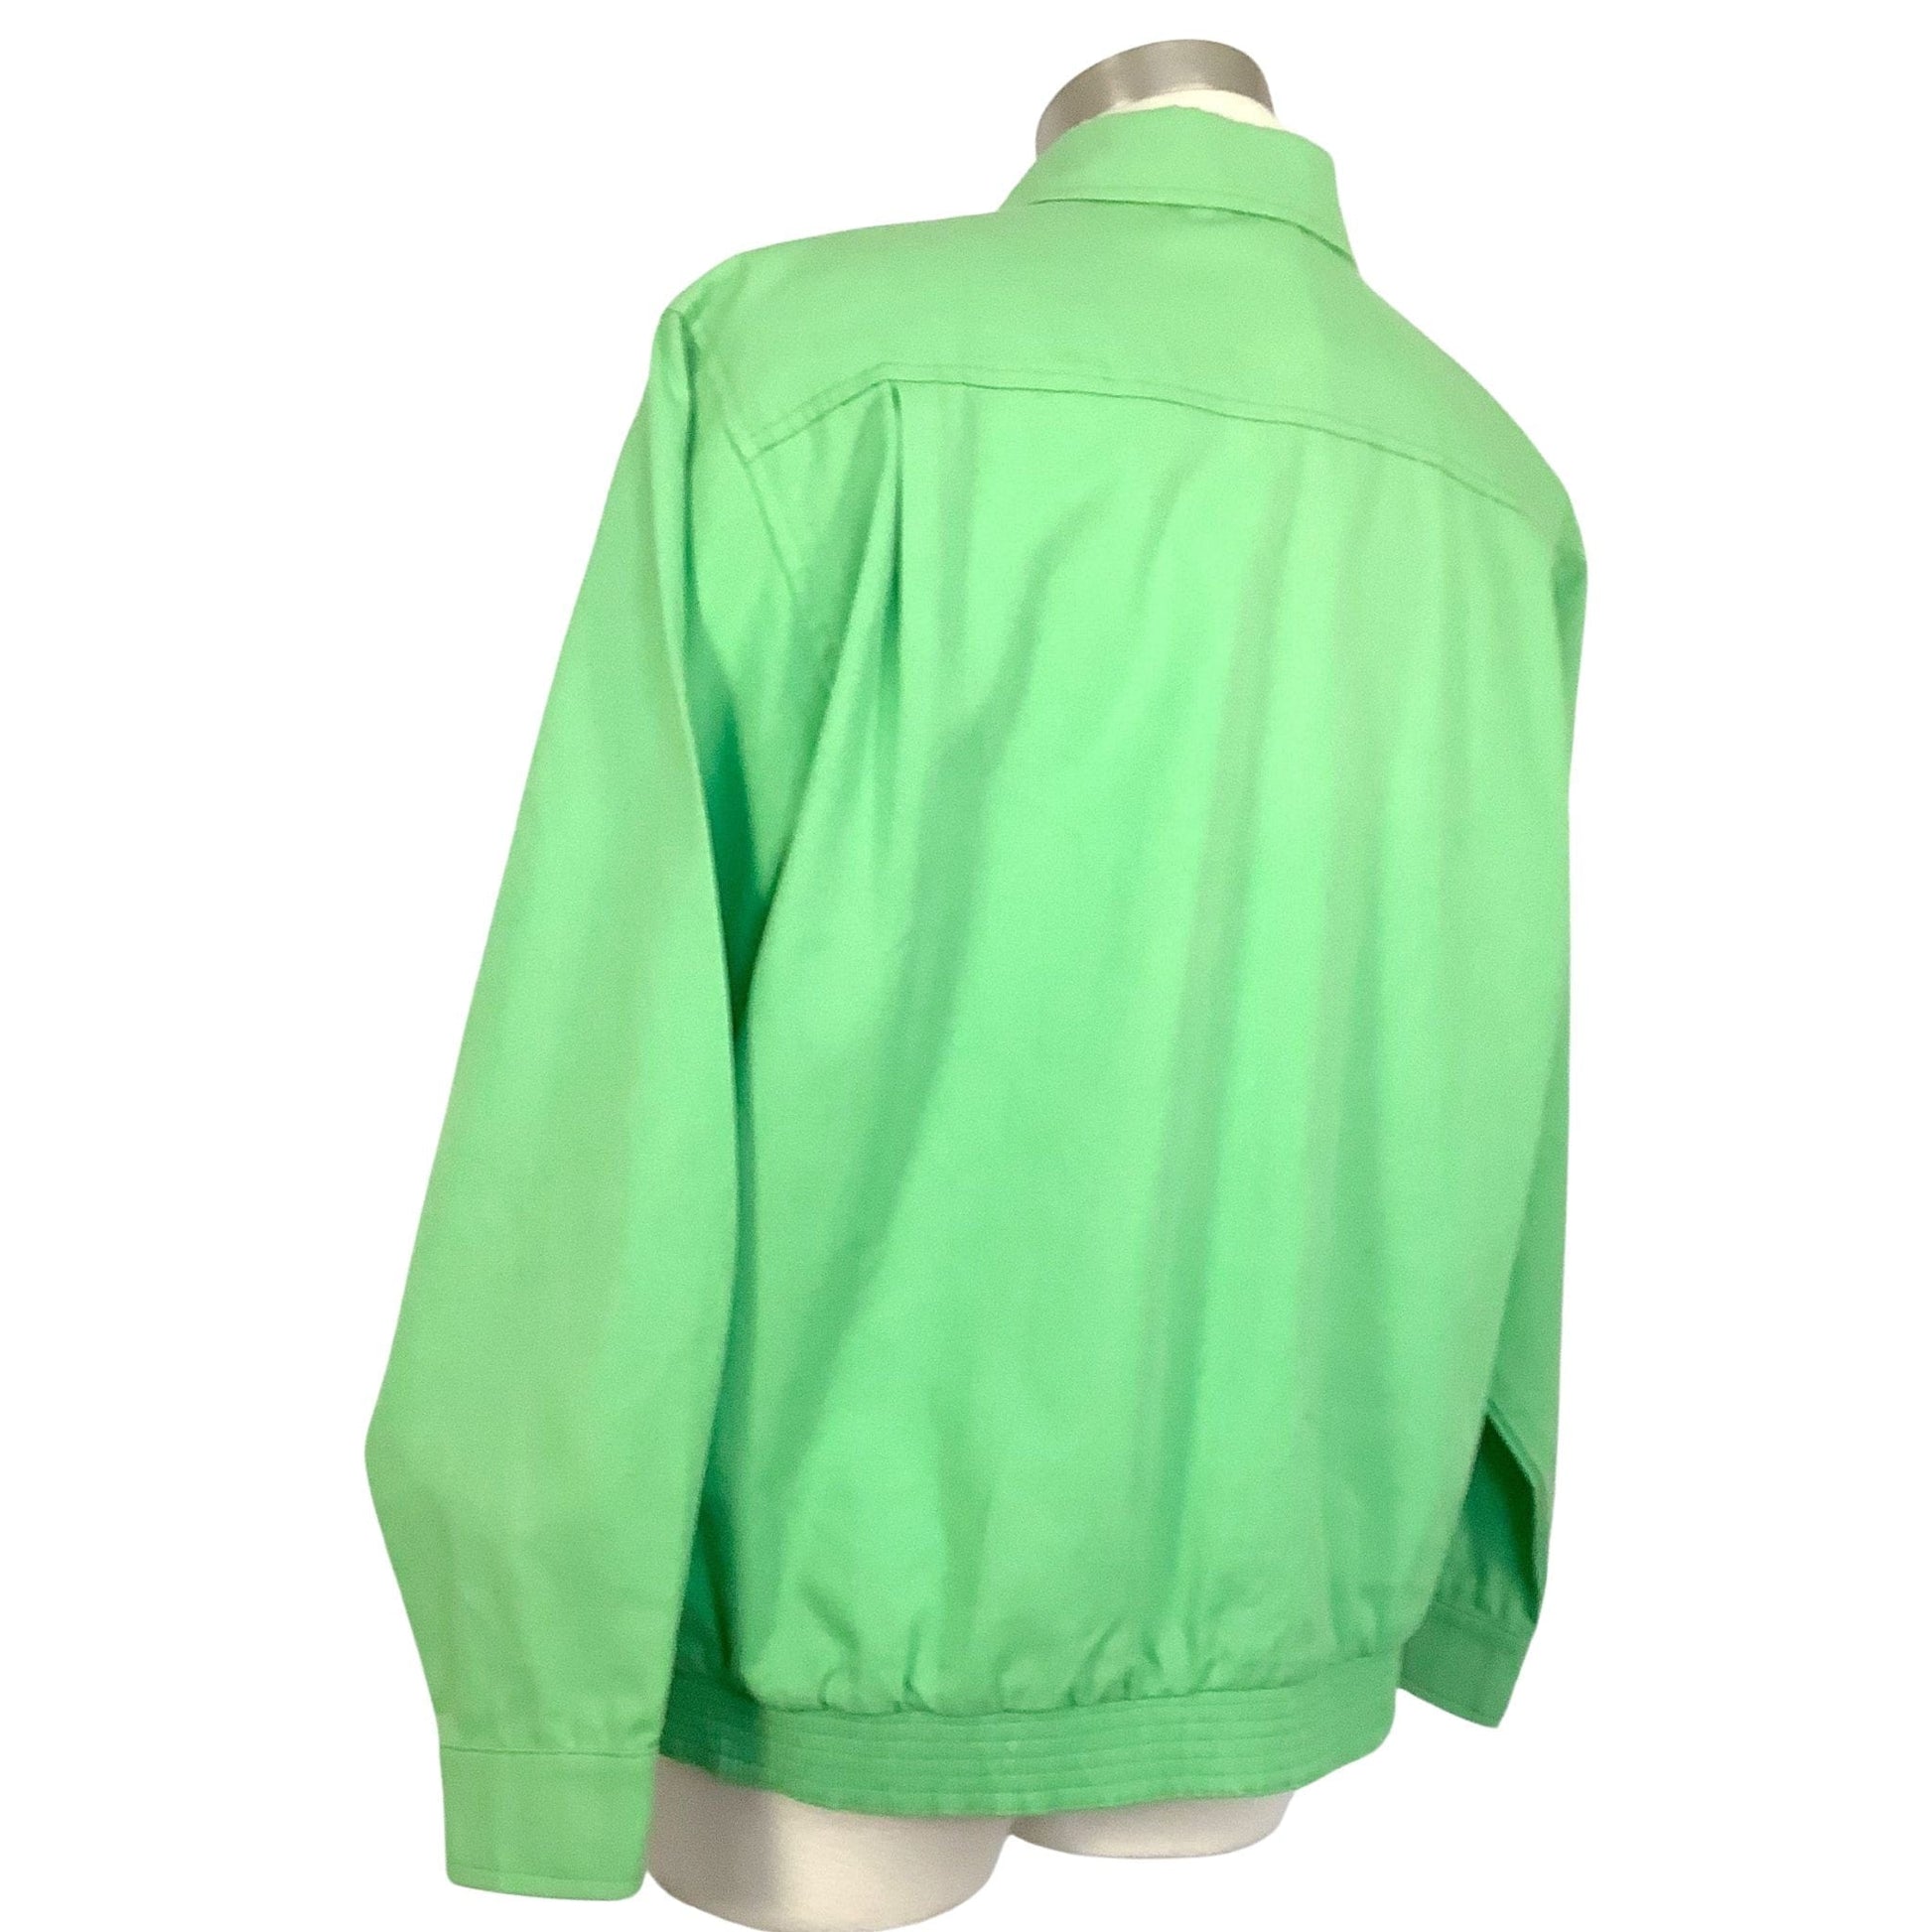 Rockabilly Green Jacket Medium / Green / Vintage 1980s